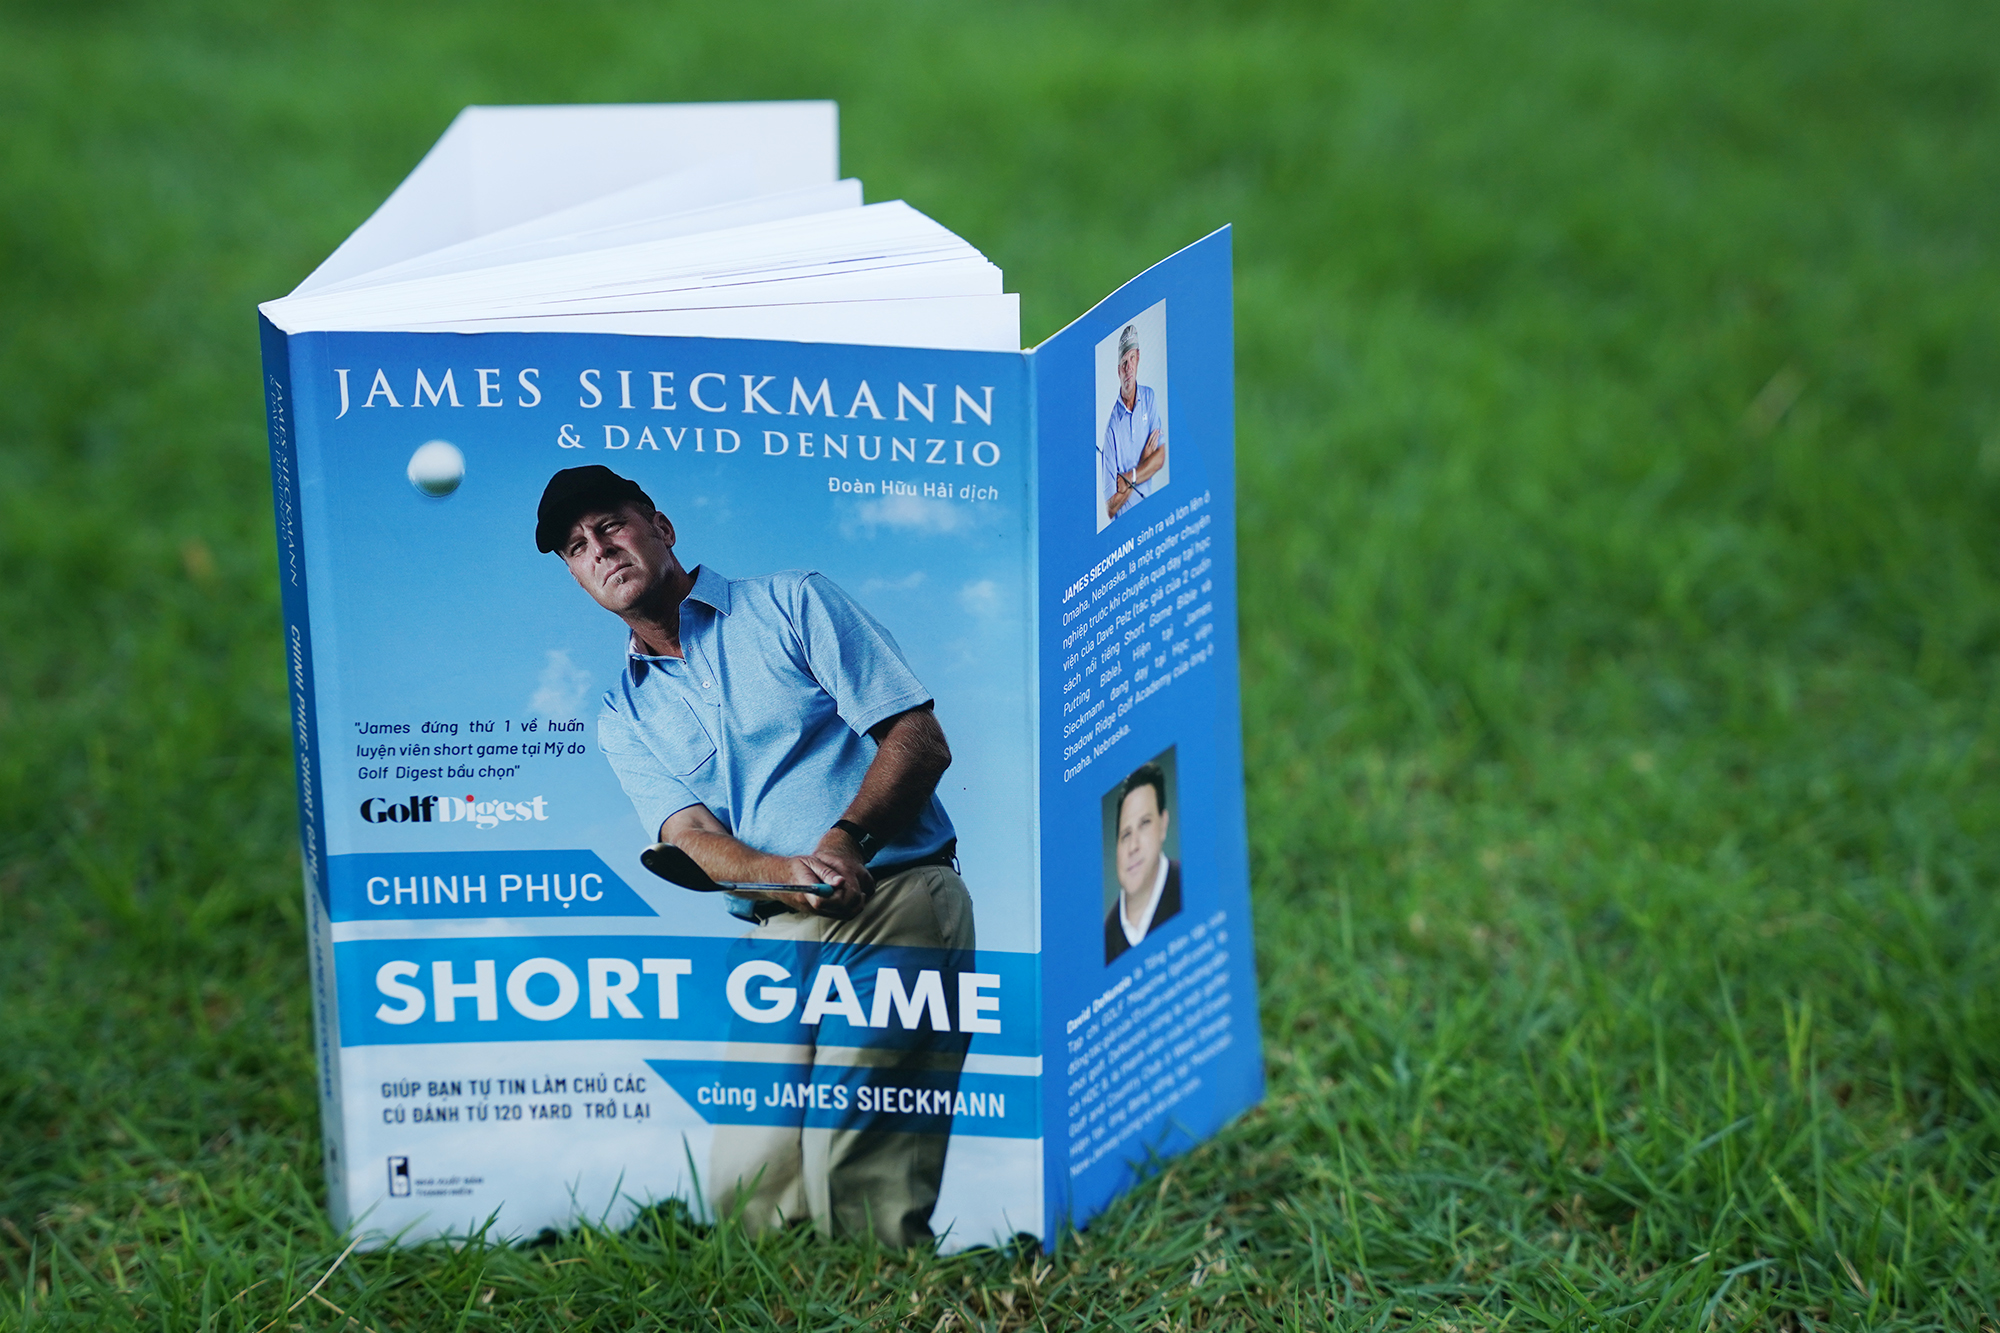 H2-Sách dạy golf tiếng việt - &quot;Chinh phục short game cùng James Sieckmann - Giúp bạn làm chủ các cú đánh từ 120 yard trở lại&quot;